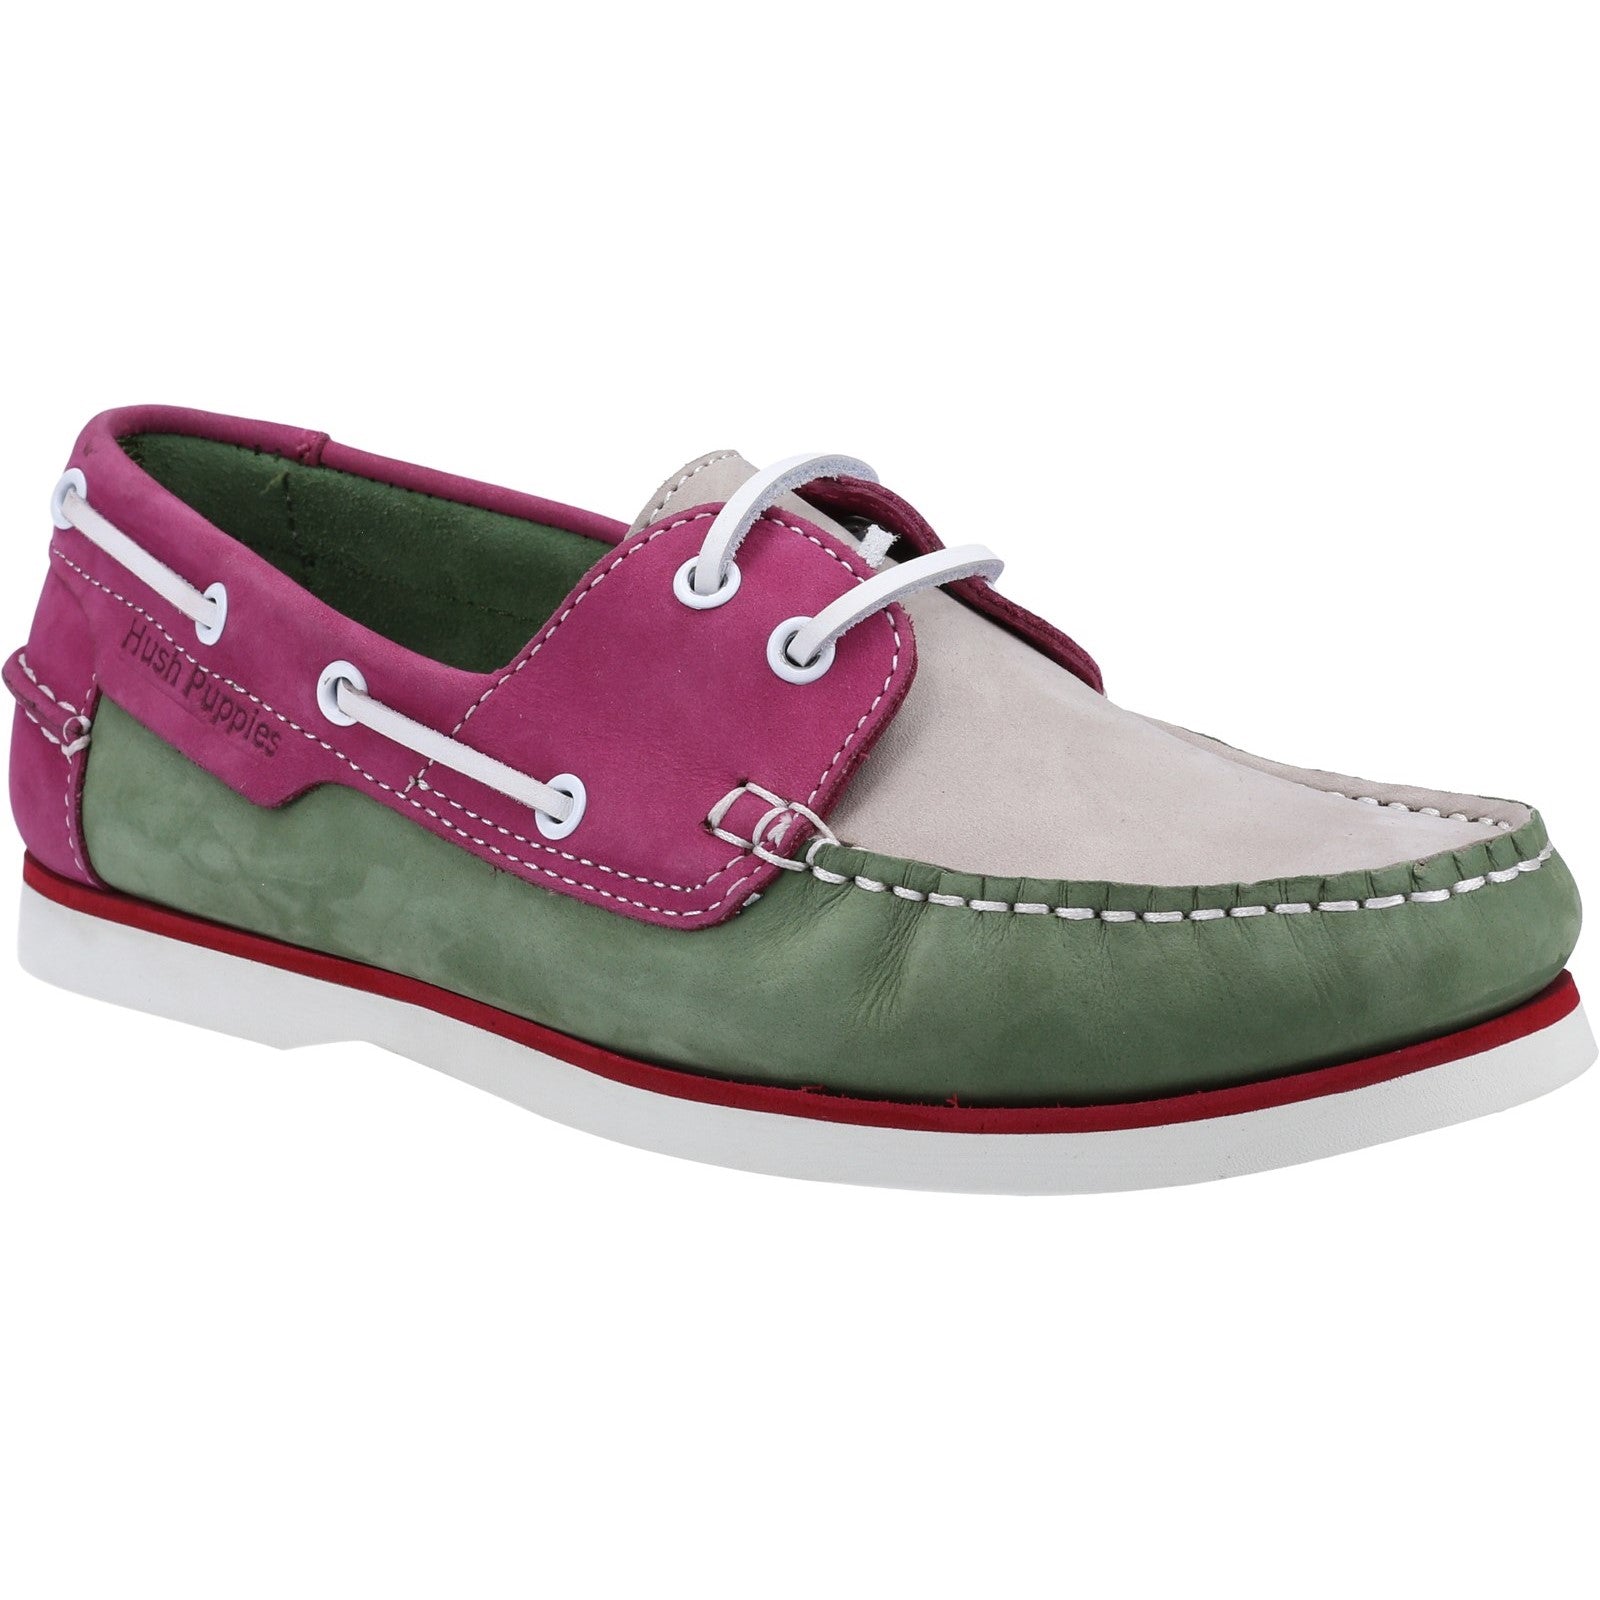 Shoe Ladies Summer Green/Pink Hush Puppies Hattie Boat Shoe